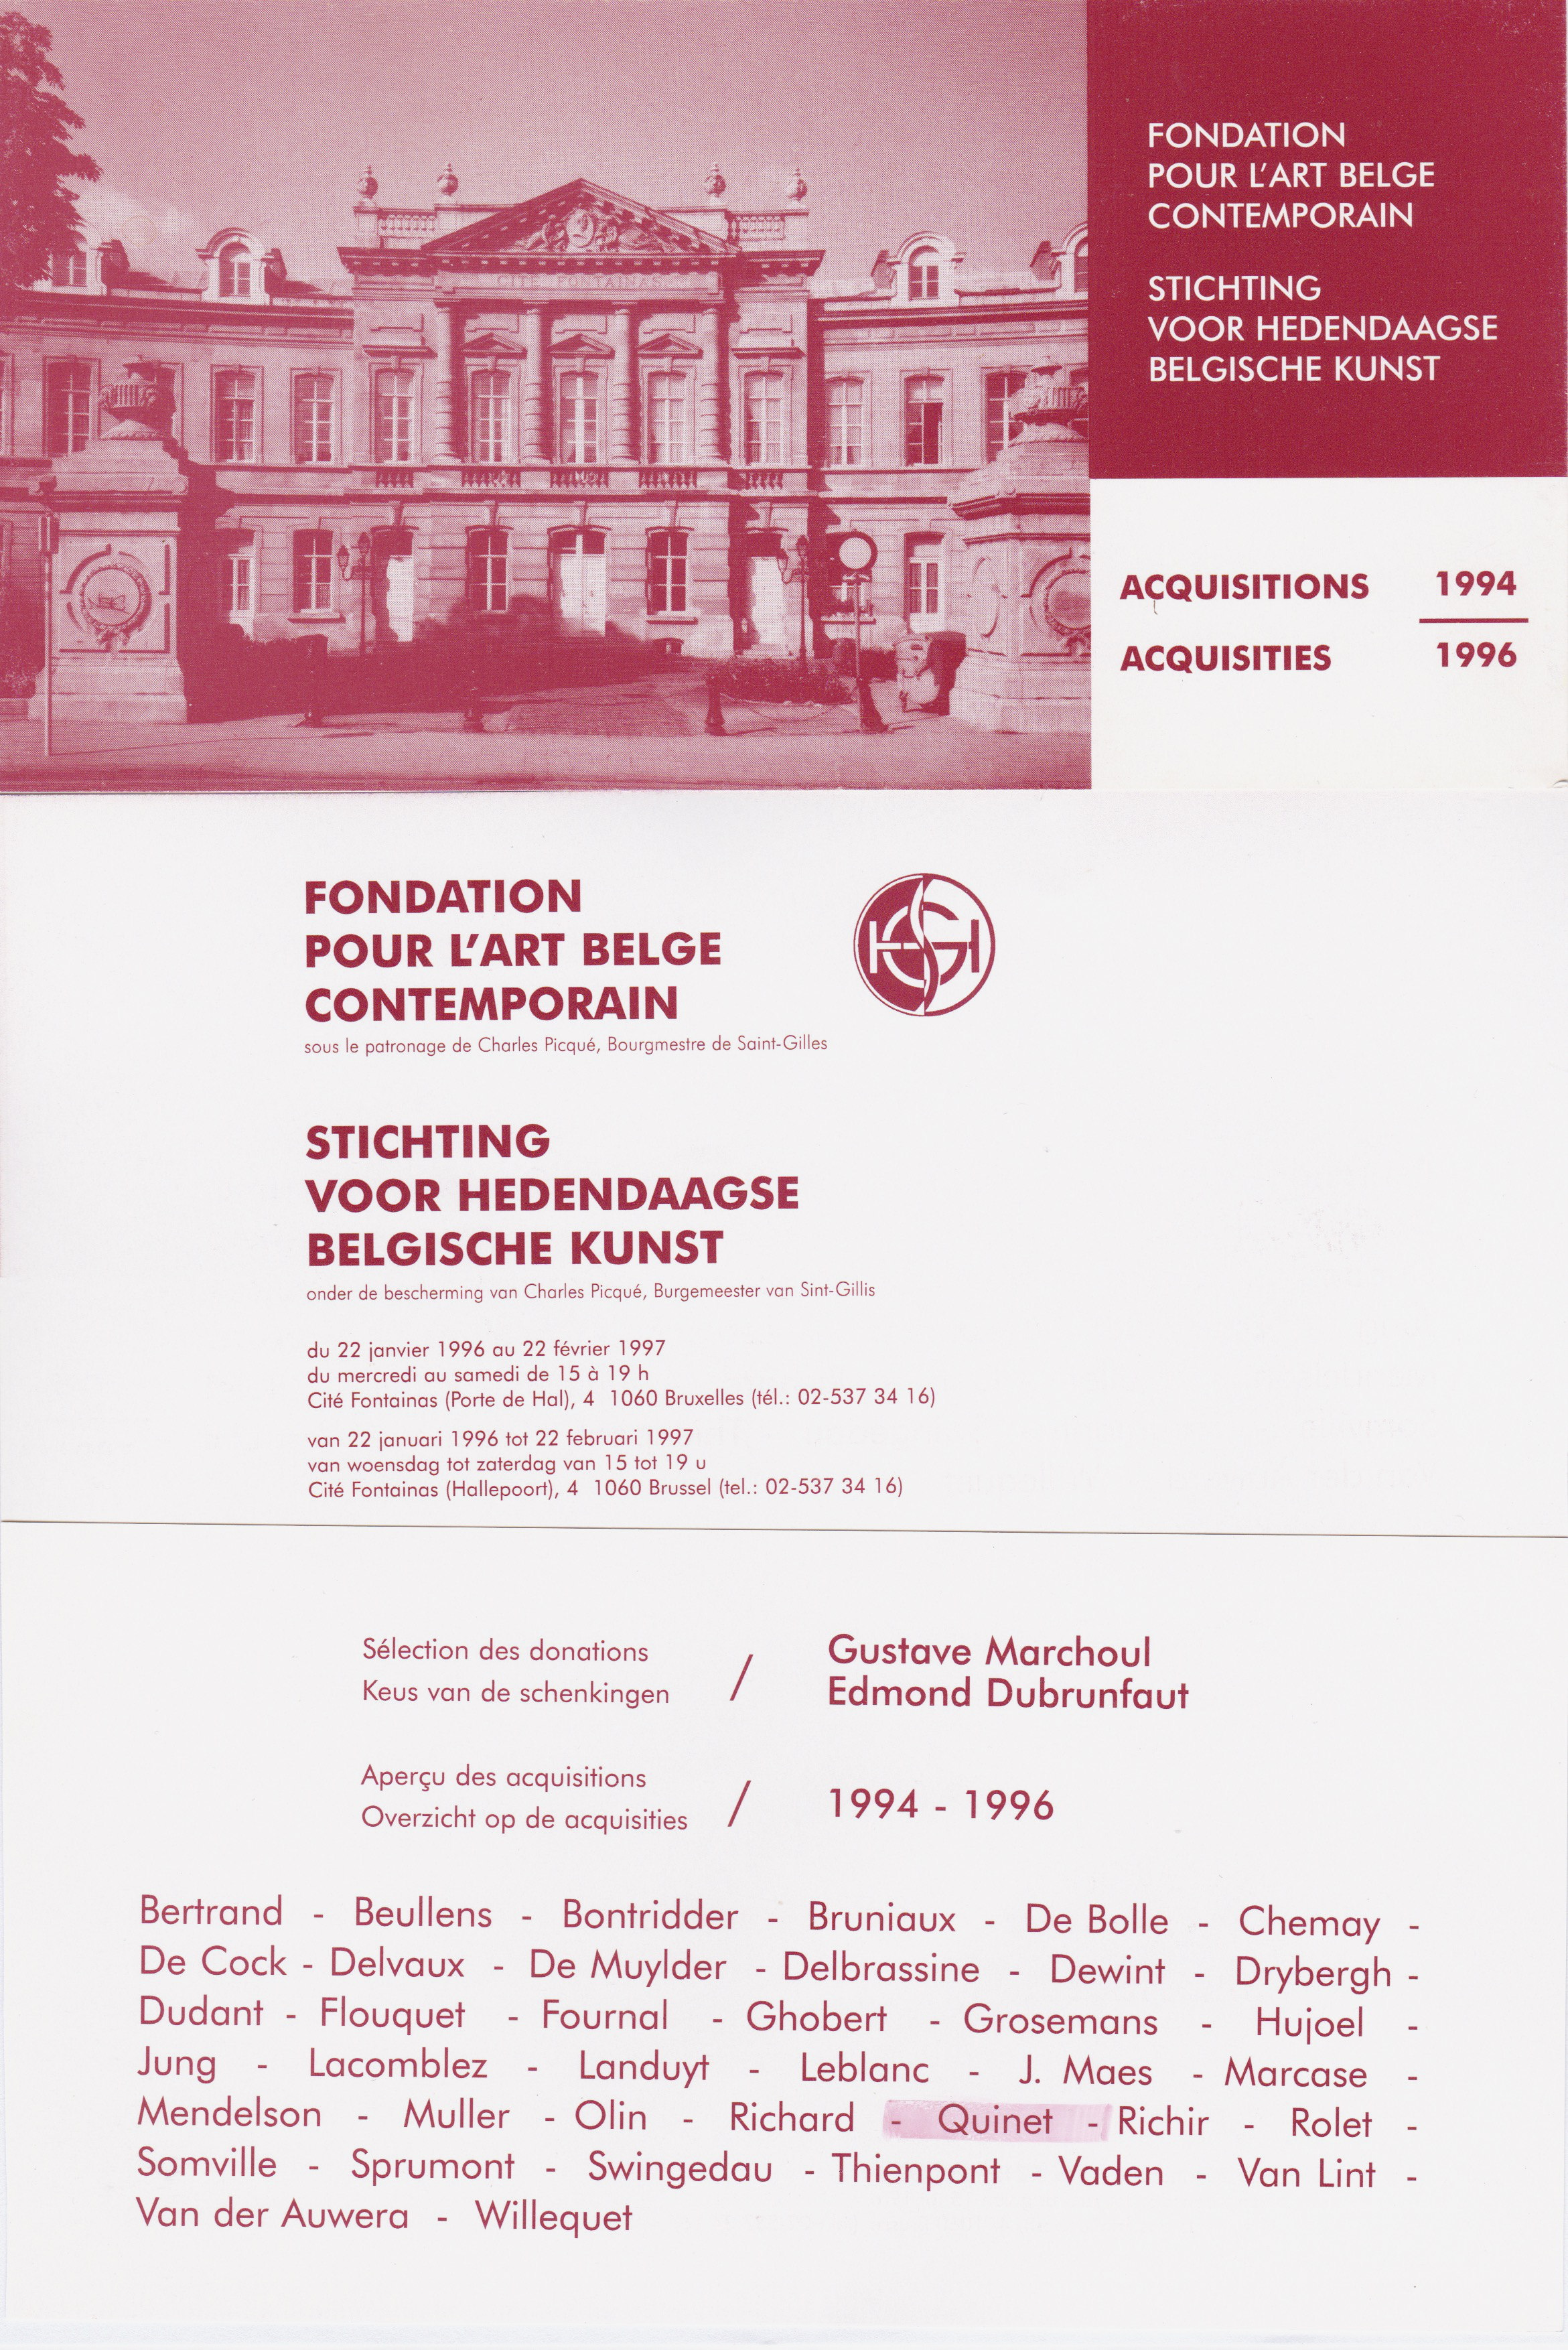 Acquisitions, Fondation pour l’Art Belge Contemporain, 1997